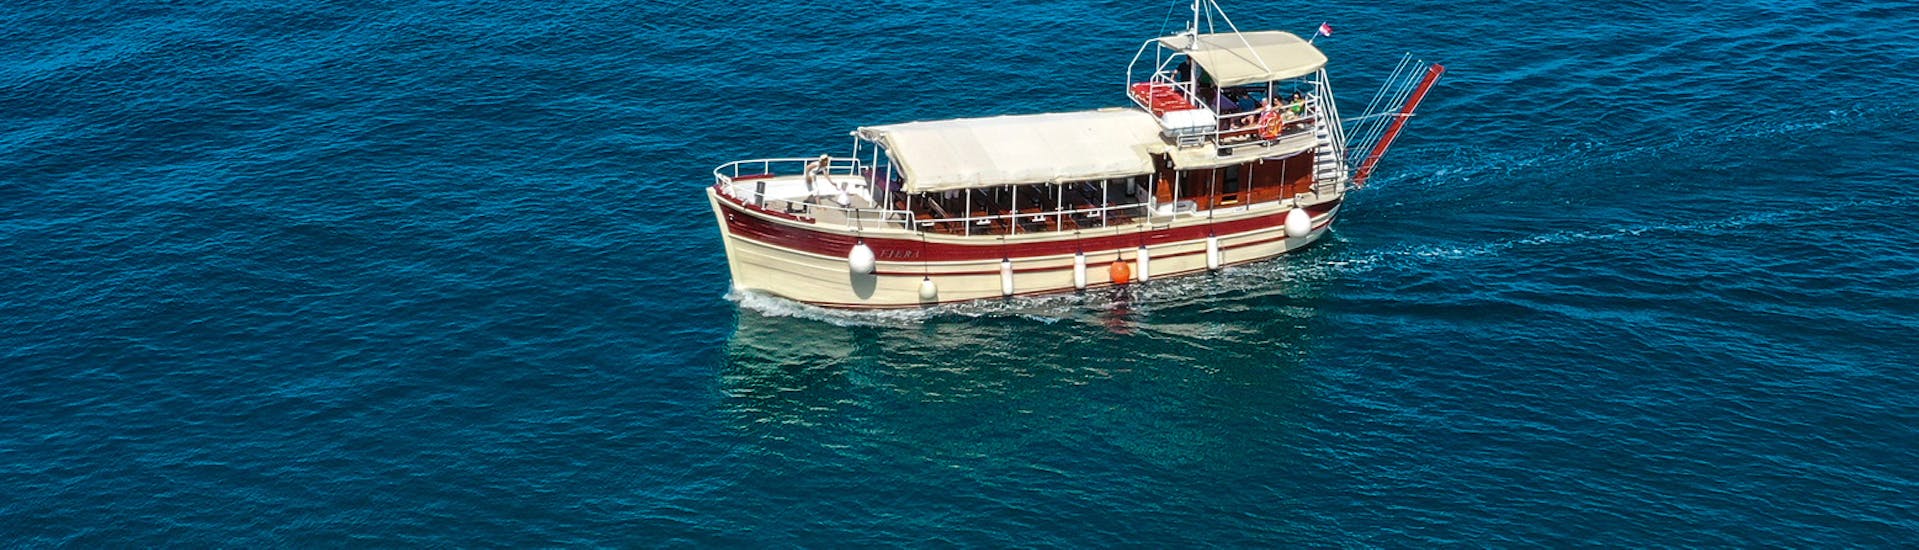 Gita in barca da Parenzo (Poreč) con visita turistica.